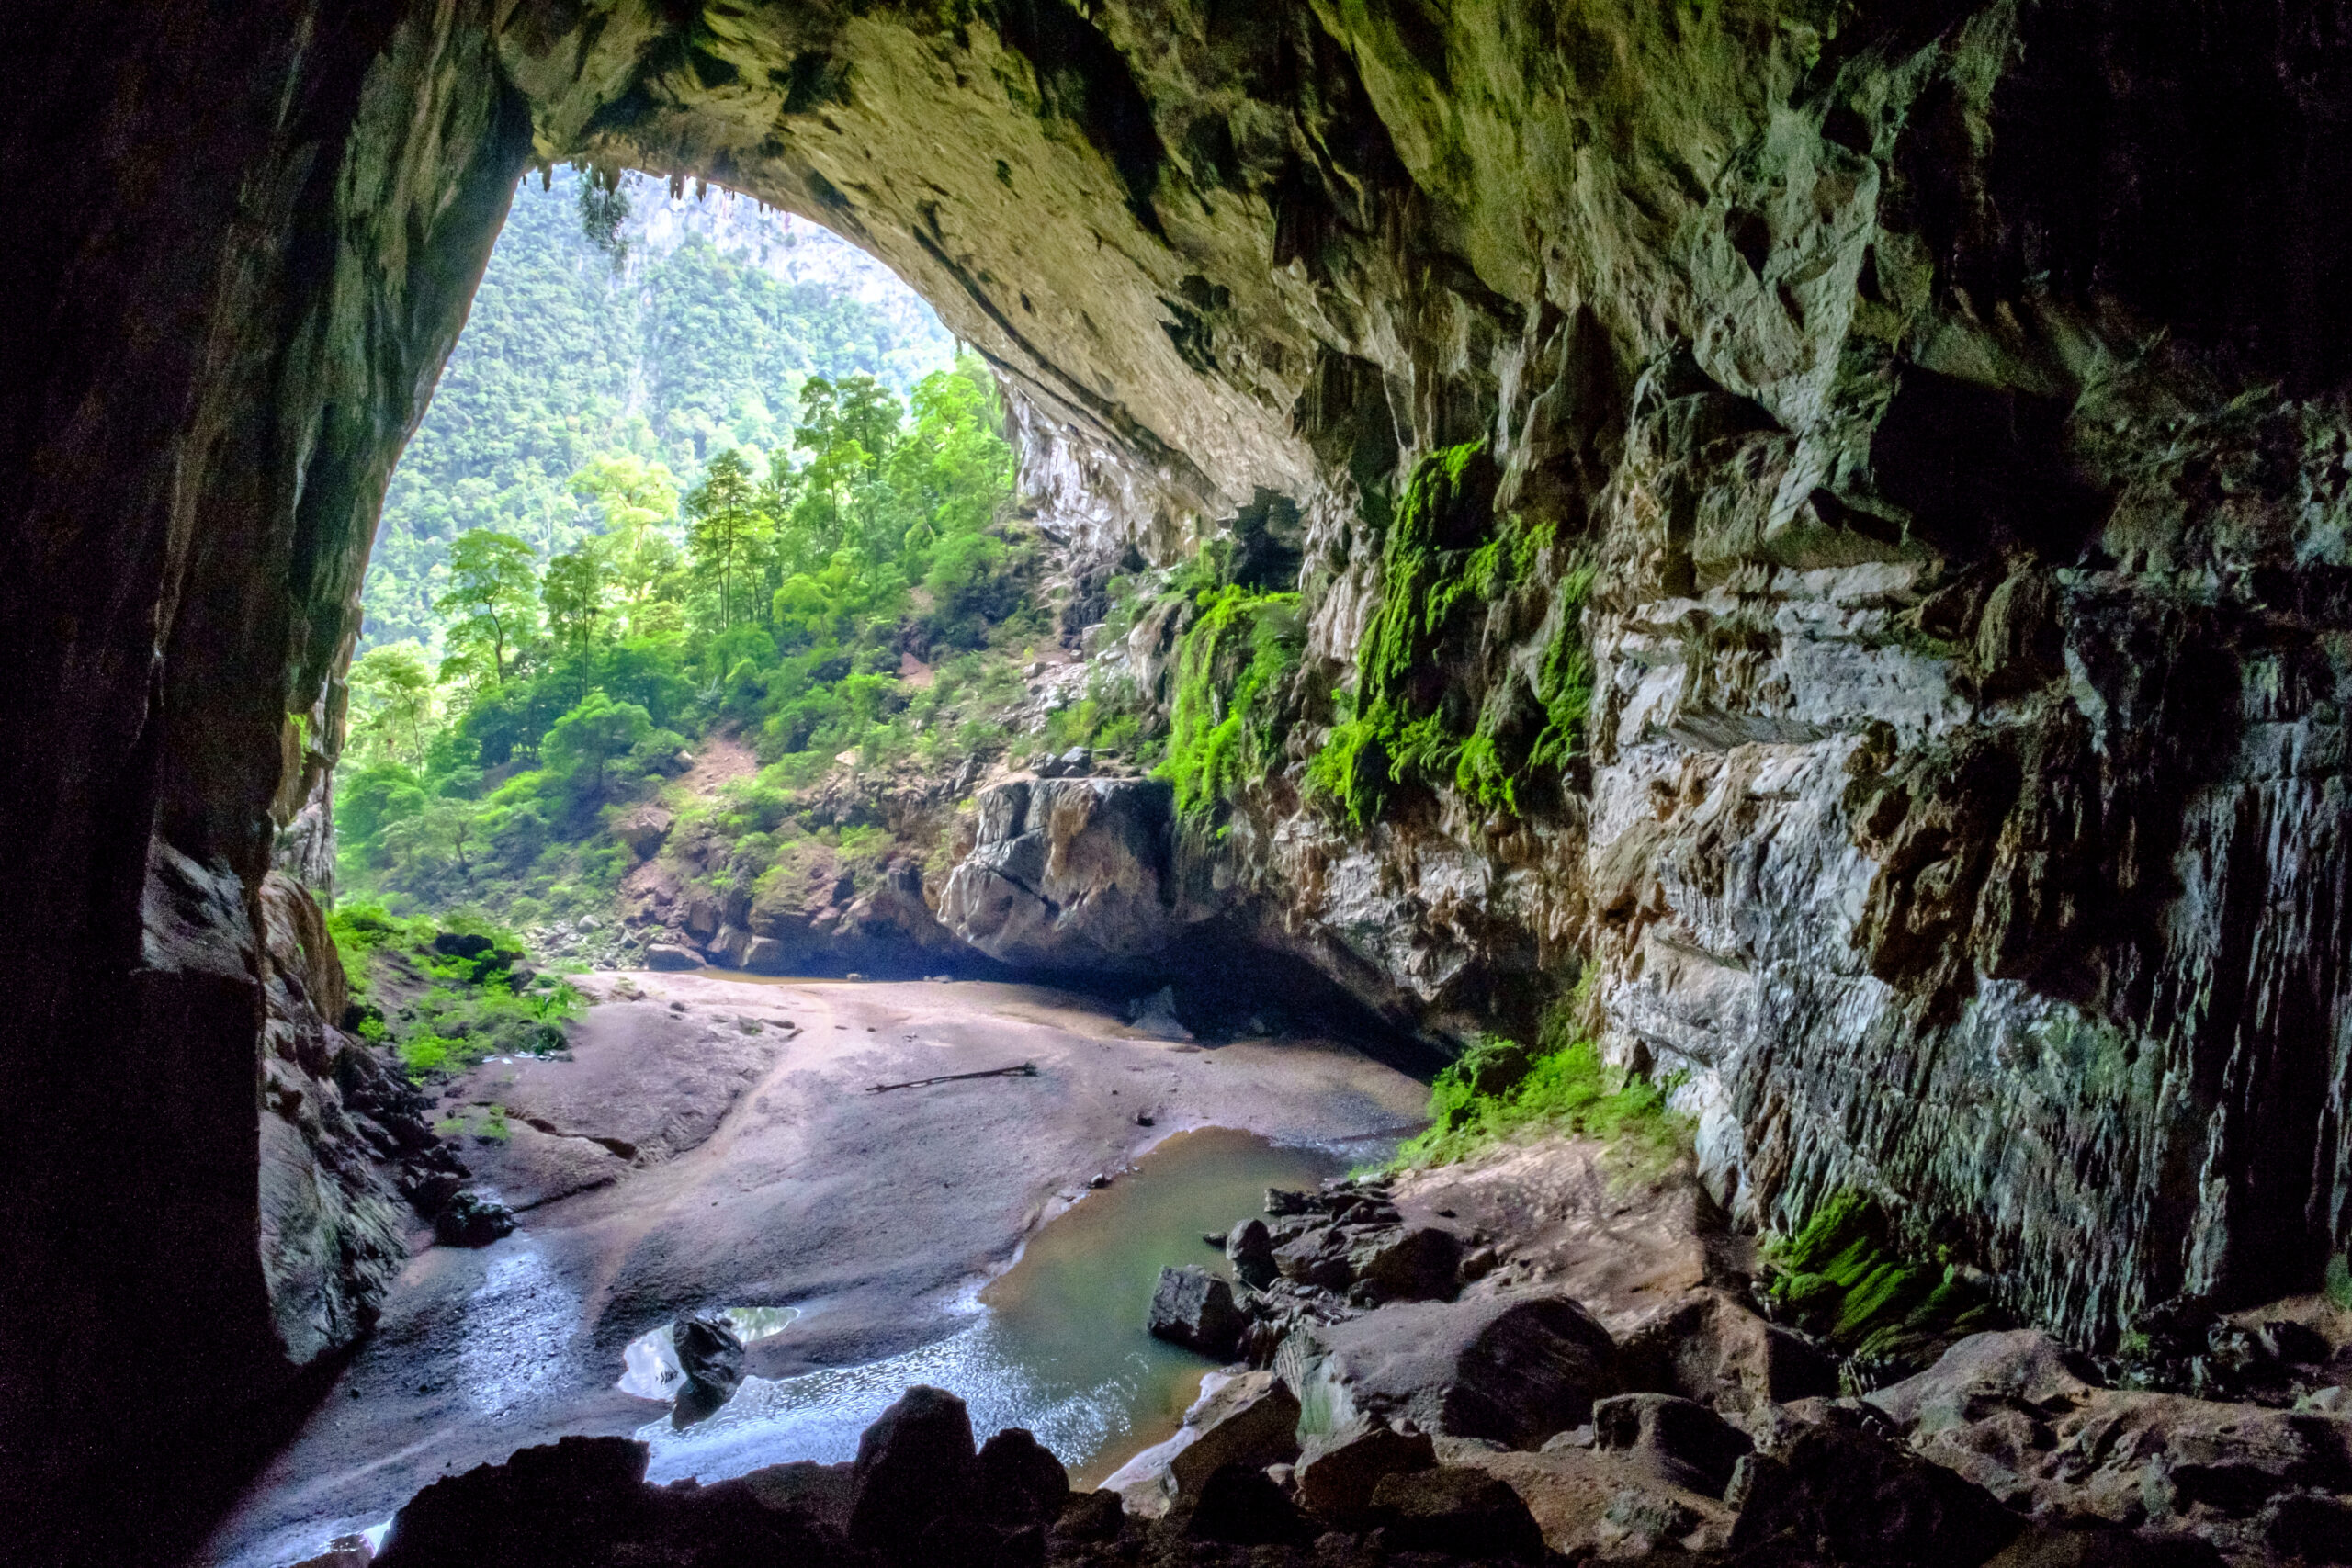 Hang Én là một hang động nằm trong vườn quốc gia Phong Nha-Kẻ Bàng, tỉnh Quảng Bình, Bắc Trung Bộ, Việt Nam. Hang Én có chiều dài hơn 1,6 km, gồm 3 cửa. Trần hang có nơi cao 100 m, nơi rộng nhất 170 m. Đây là hang động lớn thứ 3 thế giới sau hang Sơn Đoòng (Việt Nam) và hang Deer (Malaysia). Trong lòng hang có con suối trong xanh chảy quanh co, uốn lượn dẫn đến núi Sơn Đoòng làm nên vẻ kì thú của thiên nhiên nơi đây.